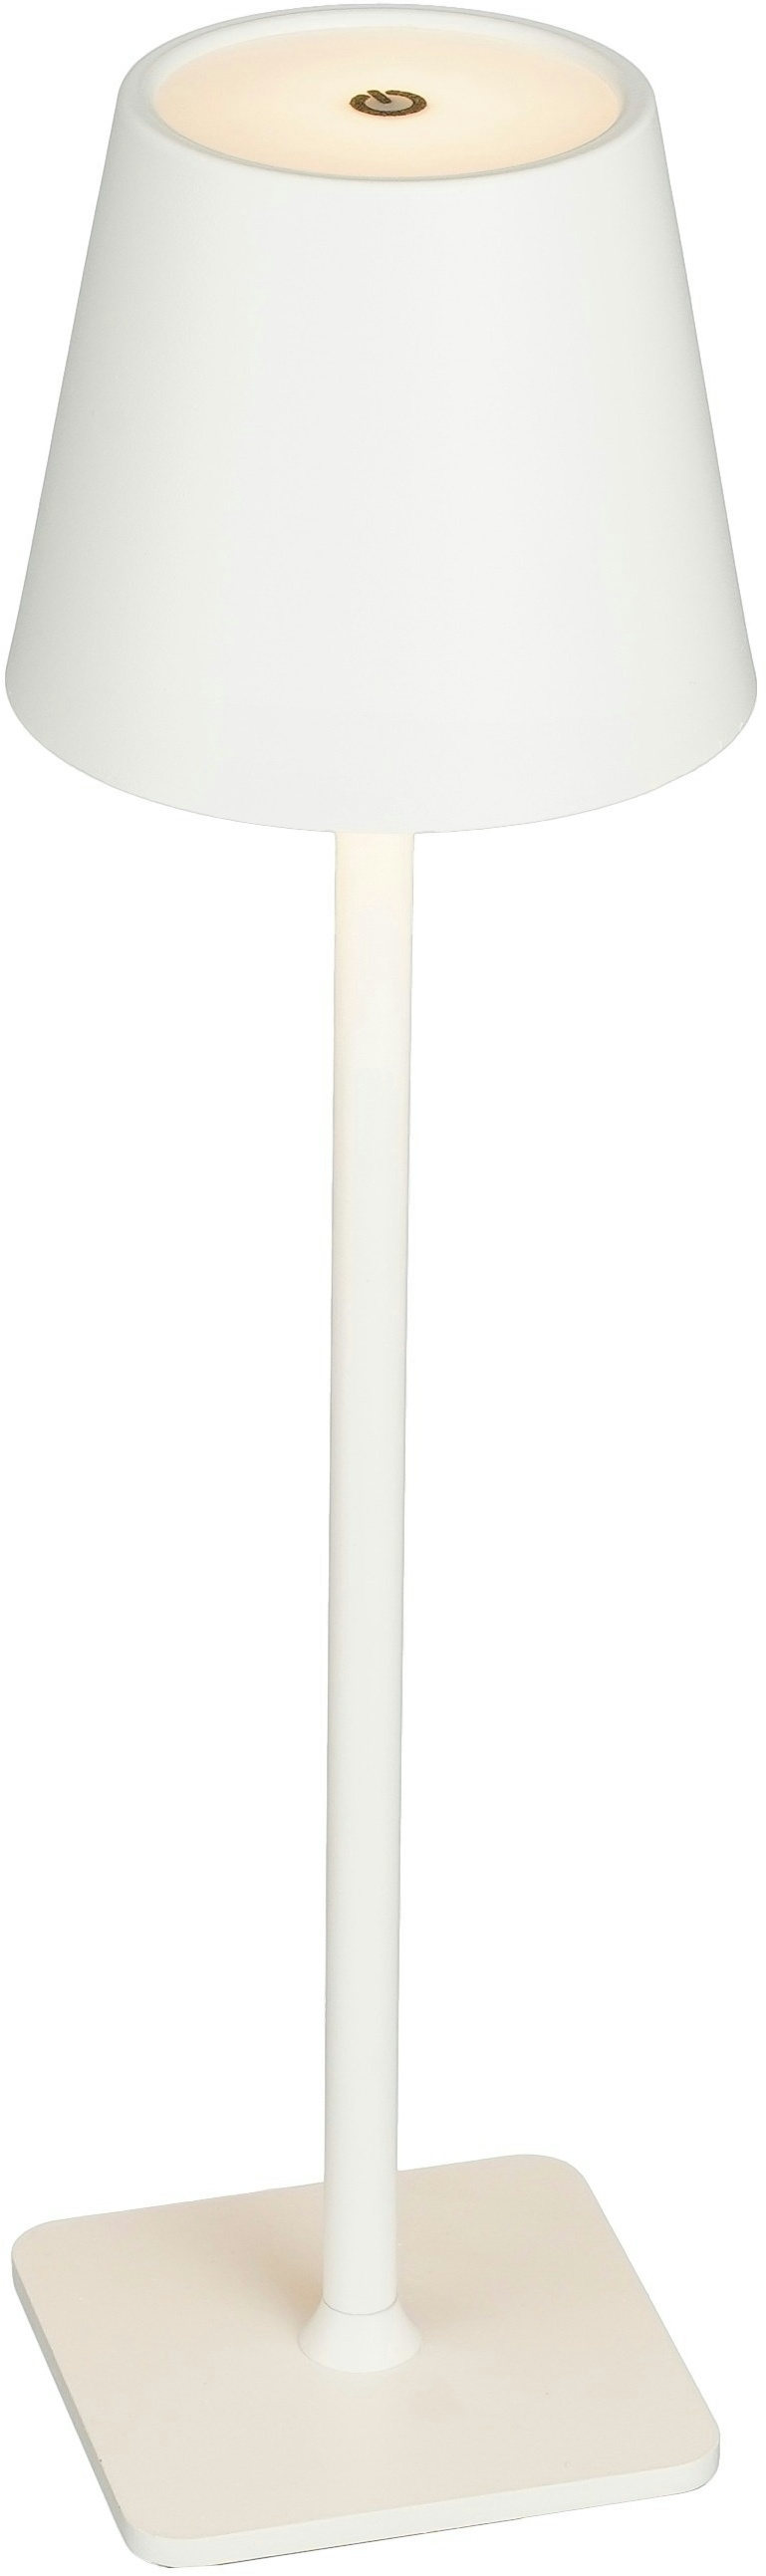 Luca Lighting Tischlampe weiss multicolour led - h38xd10,5cm